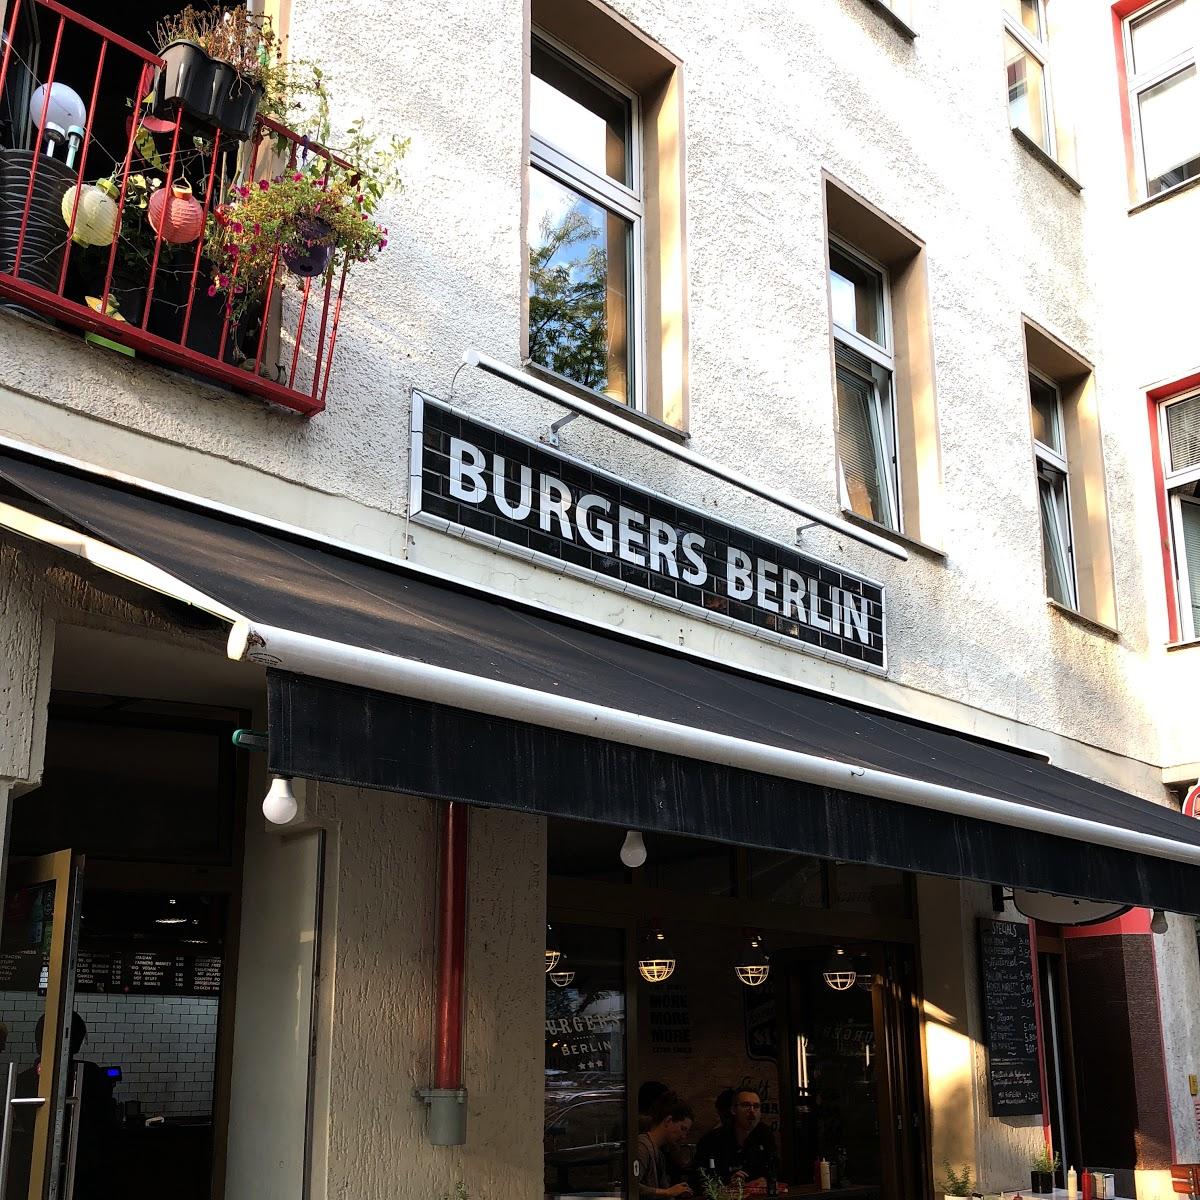 Restaurant "Burgers Berlin" in Berlin